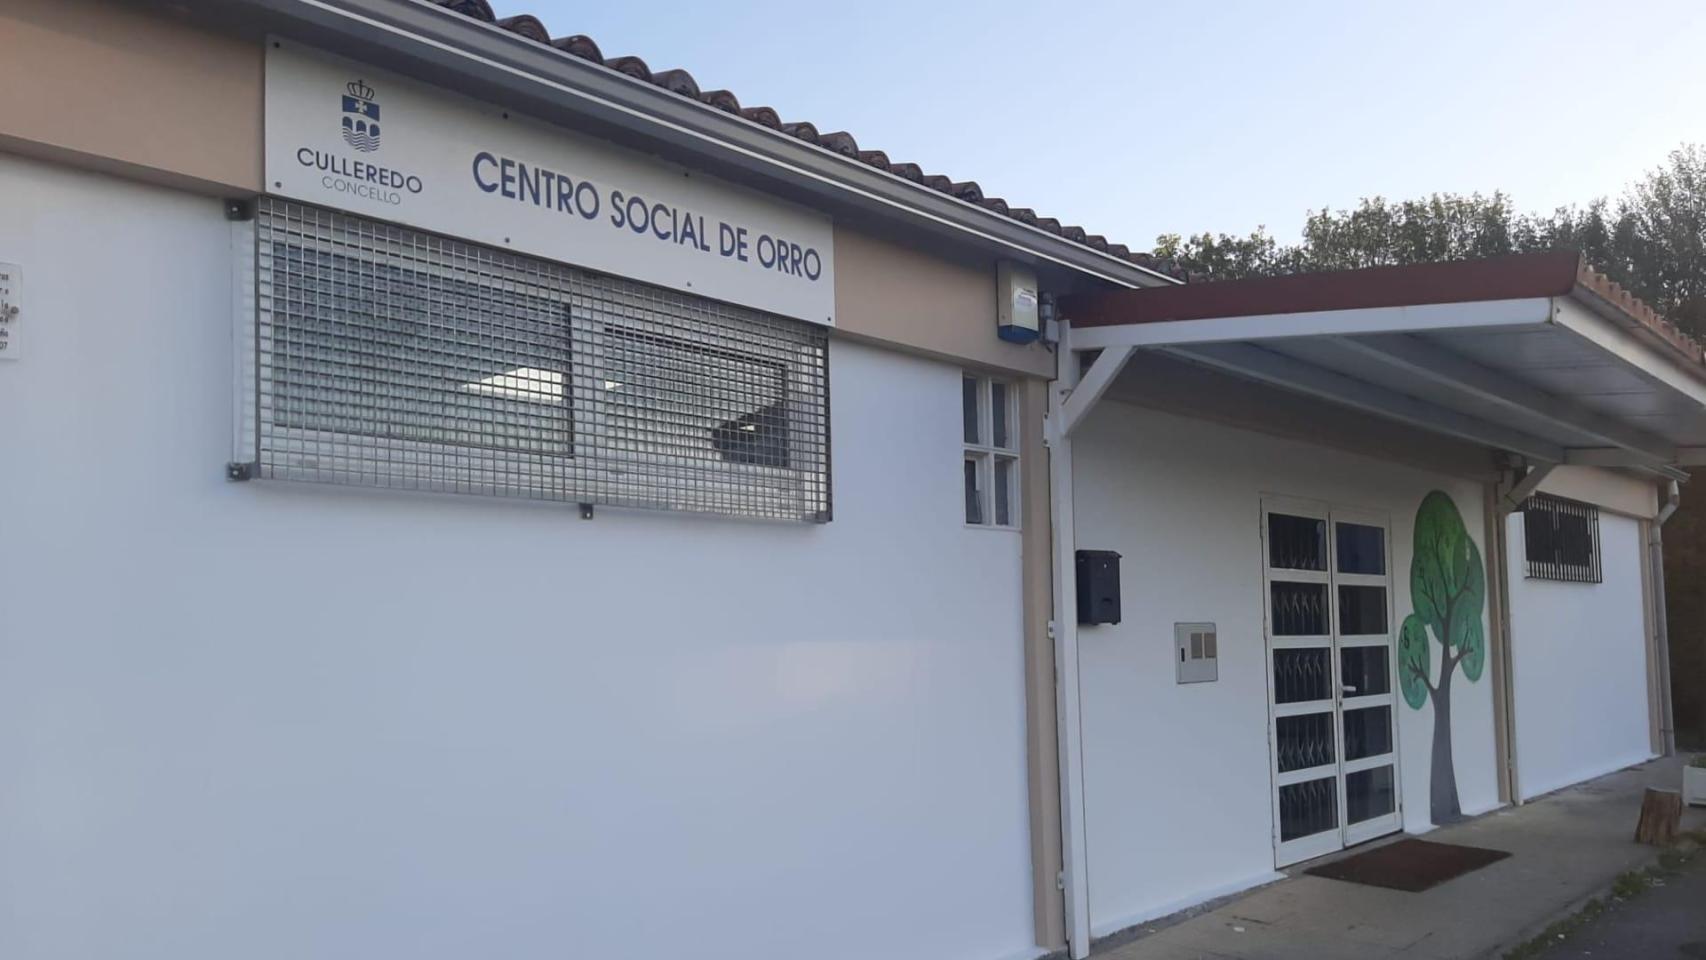 Centro Social de Orro